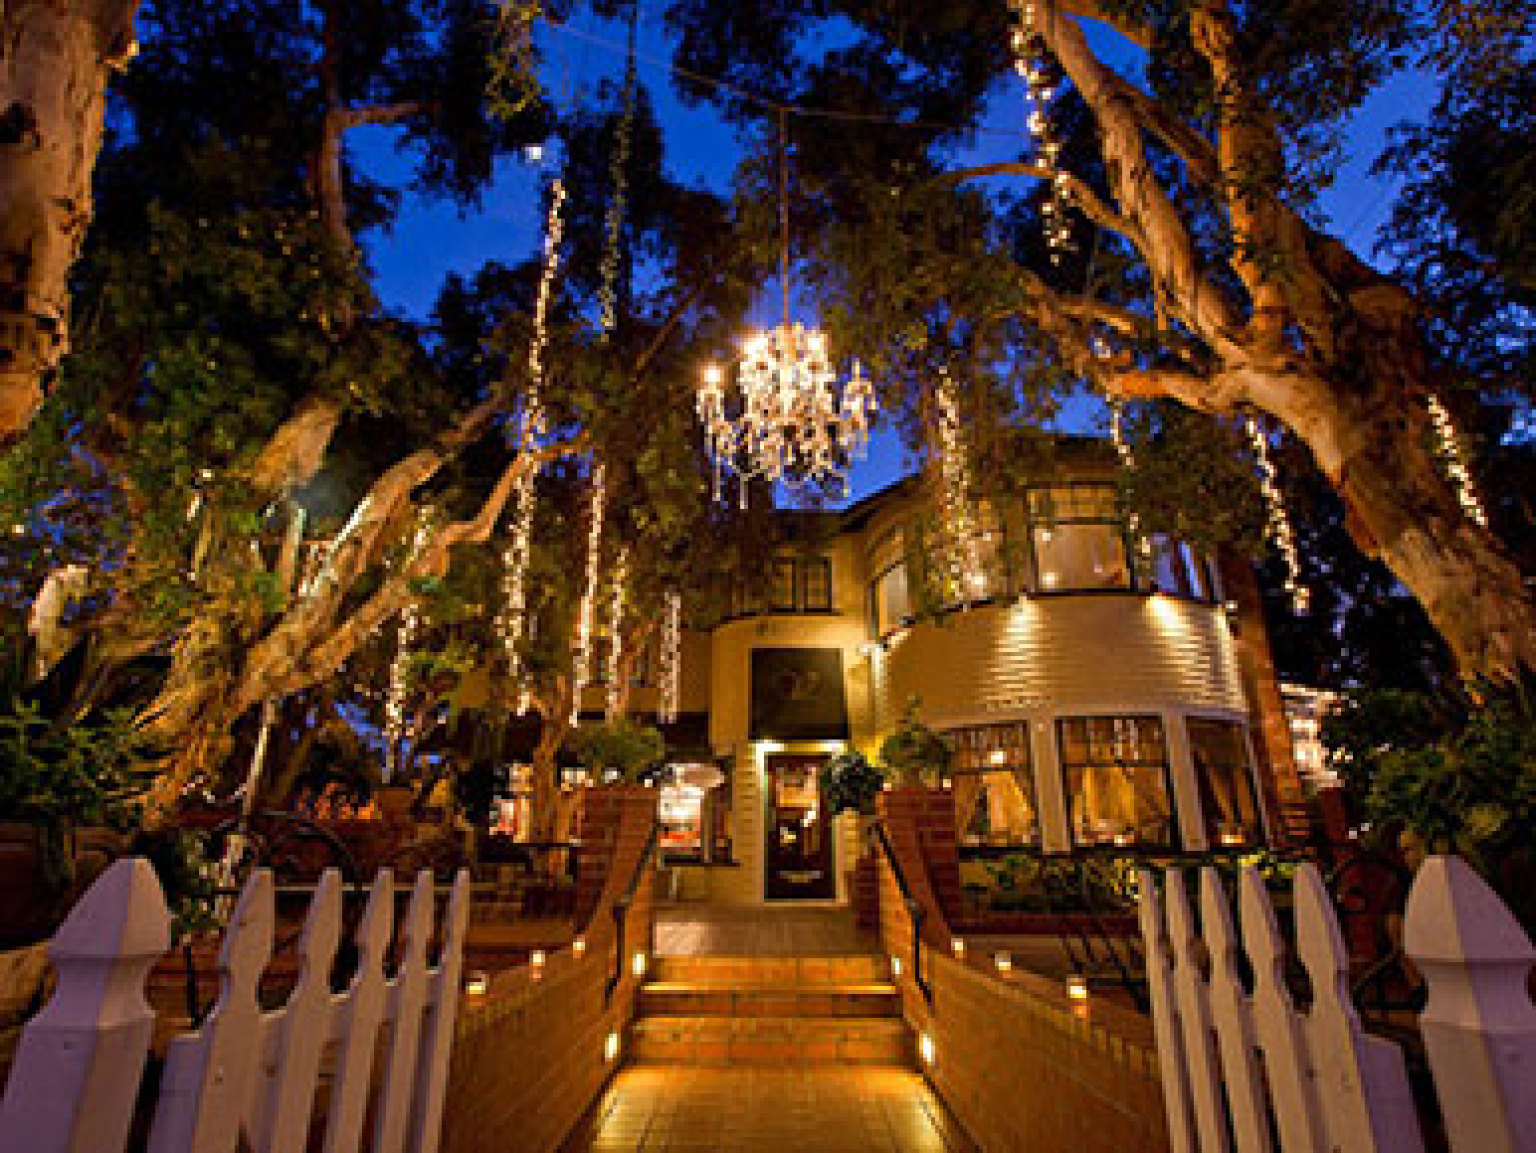 LA Wedding Venues: Best Restaurants, Museums & Gardens (PHOTOS) | HuffPost